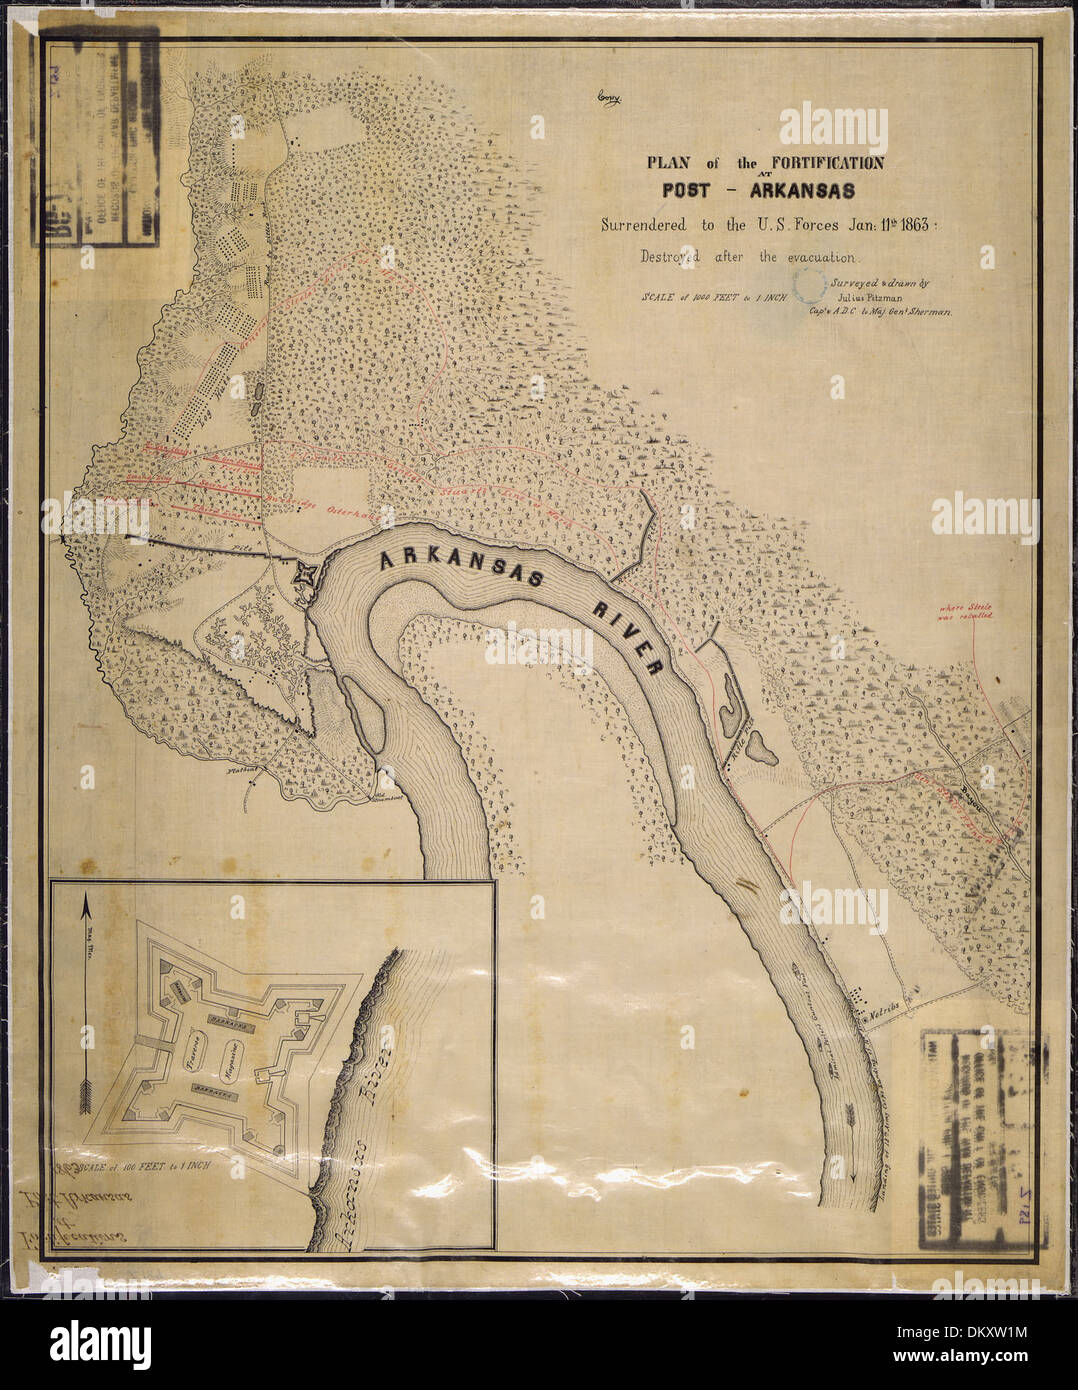 (Mapa y hundir la tierra) Plan de la Fortificación (Fort Hindman) en el Post, Arkansas, se rindió a las fuerzas estadounidenses... 305724 Foto de stock